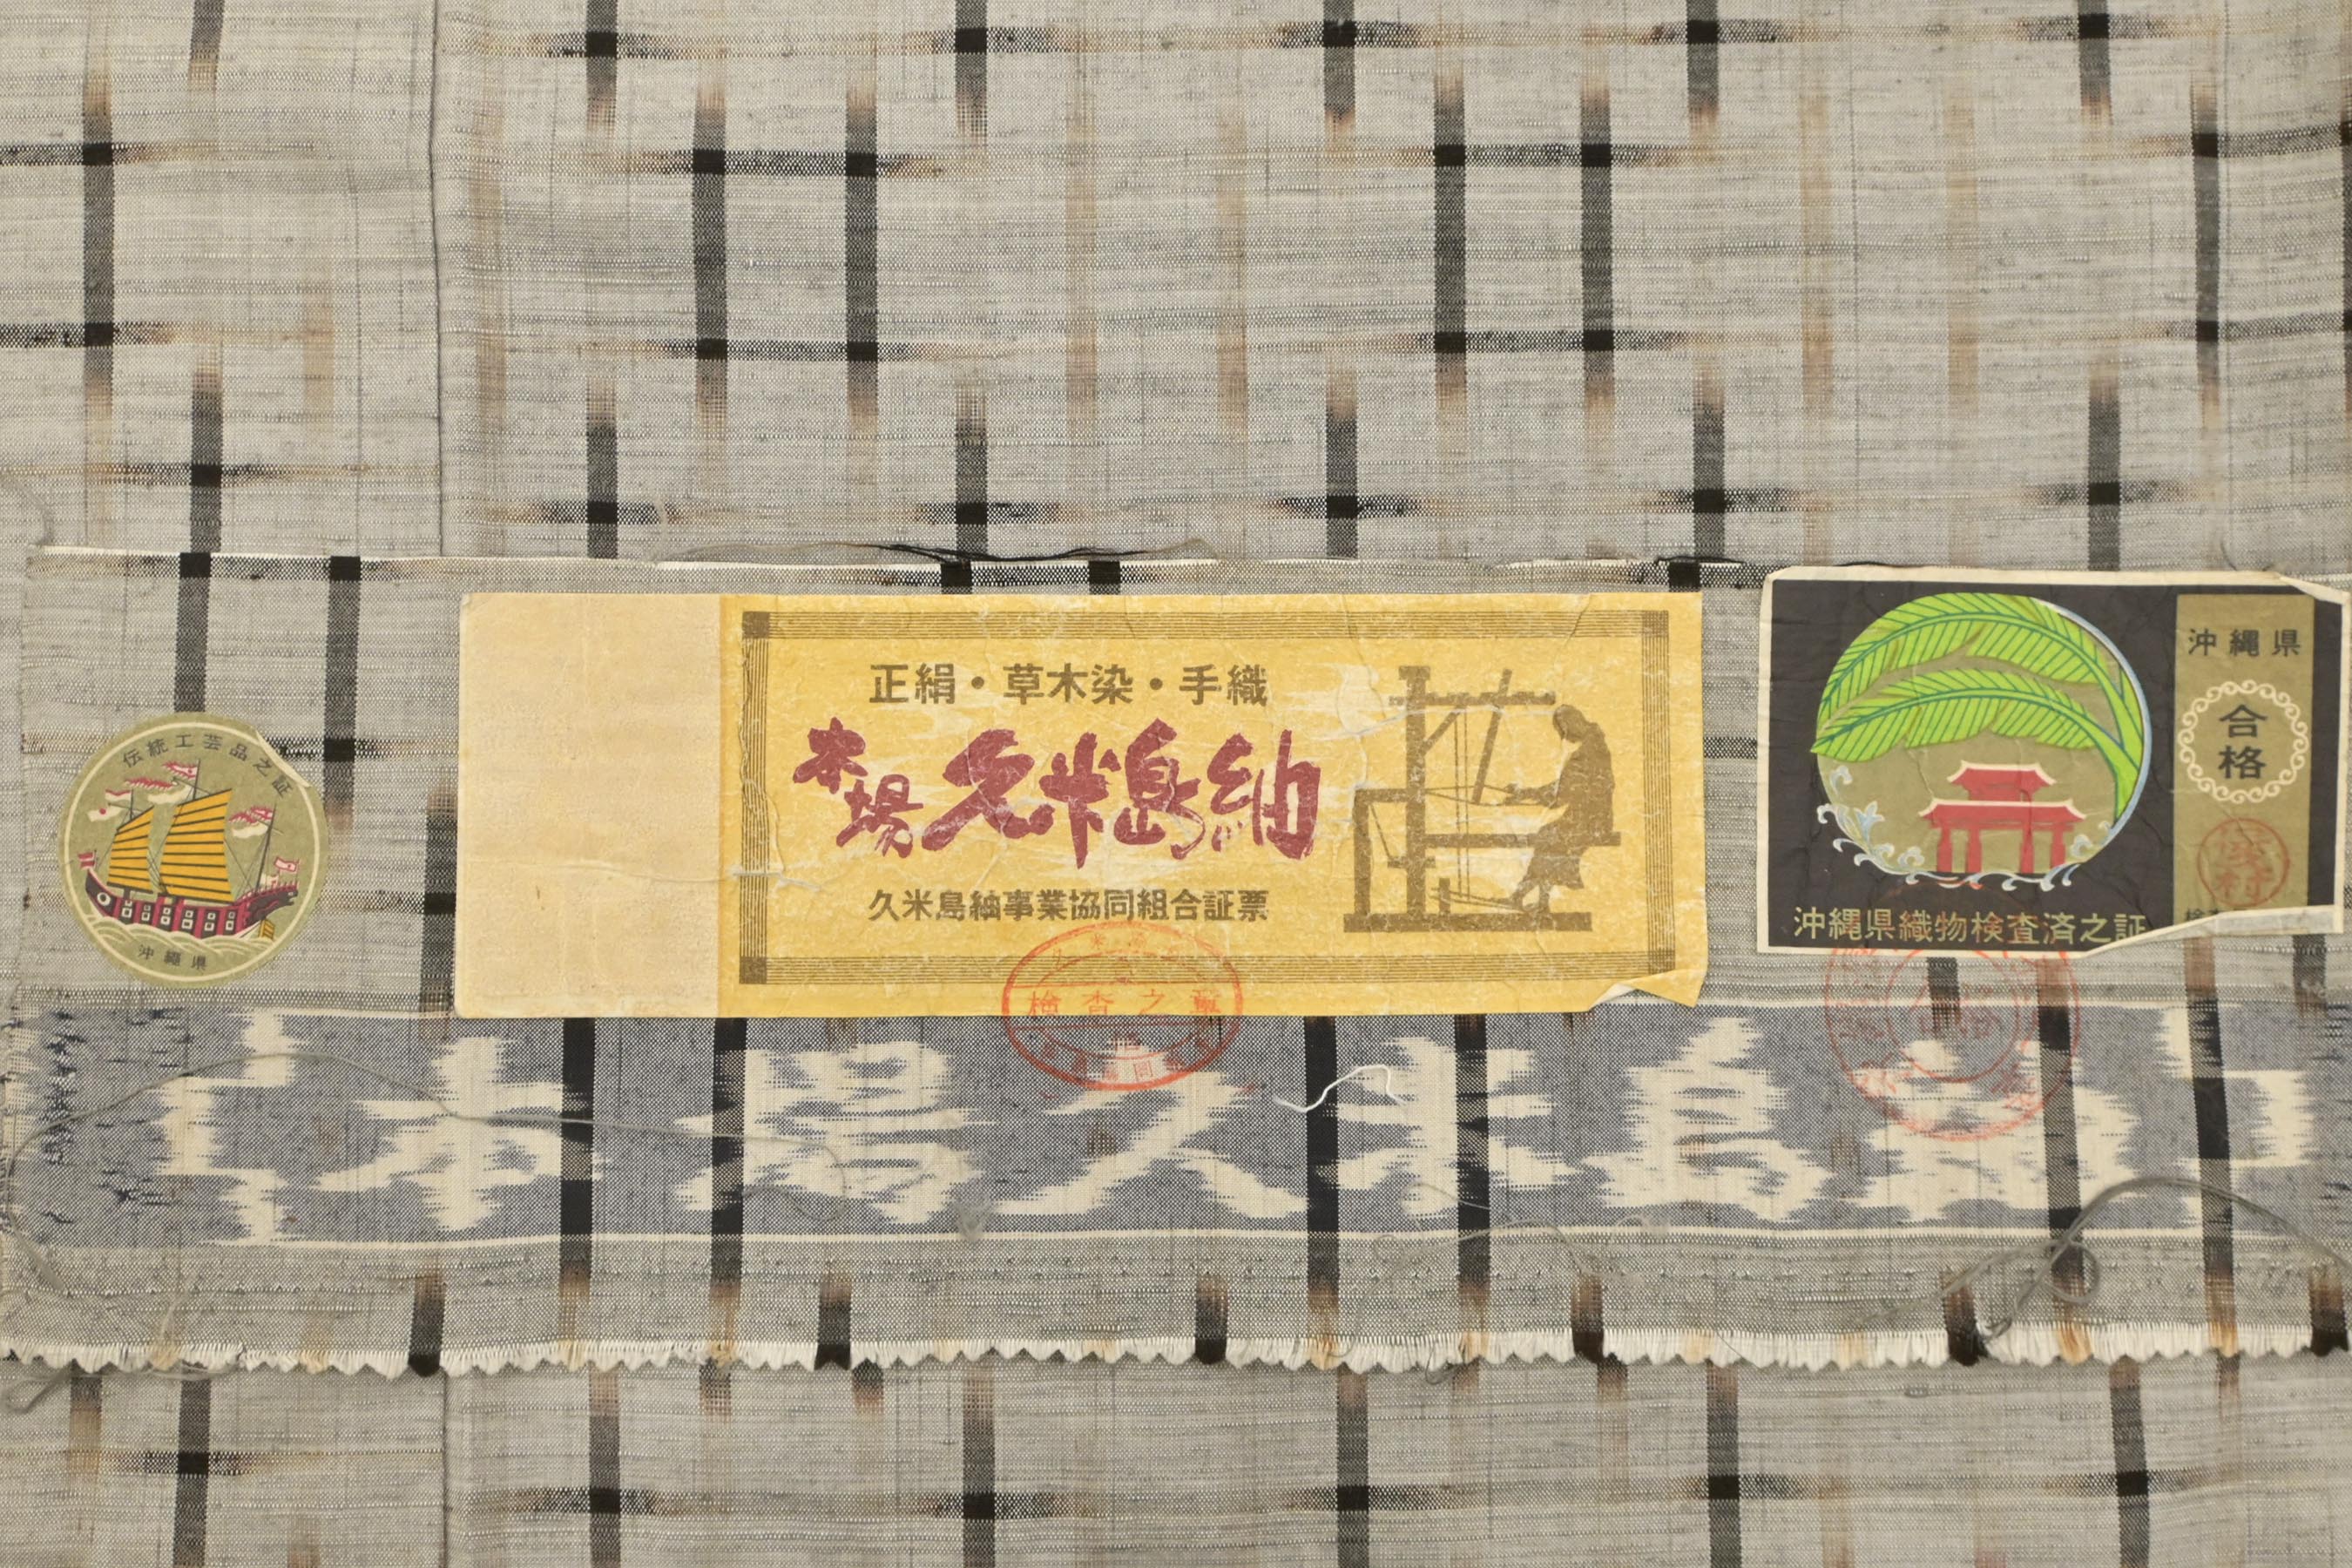 本場久米島紬 通産大臣指定伝統的工芸品 無地 赤墨色 正絹 反物T4533